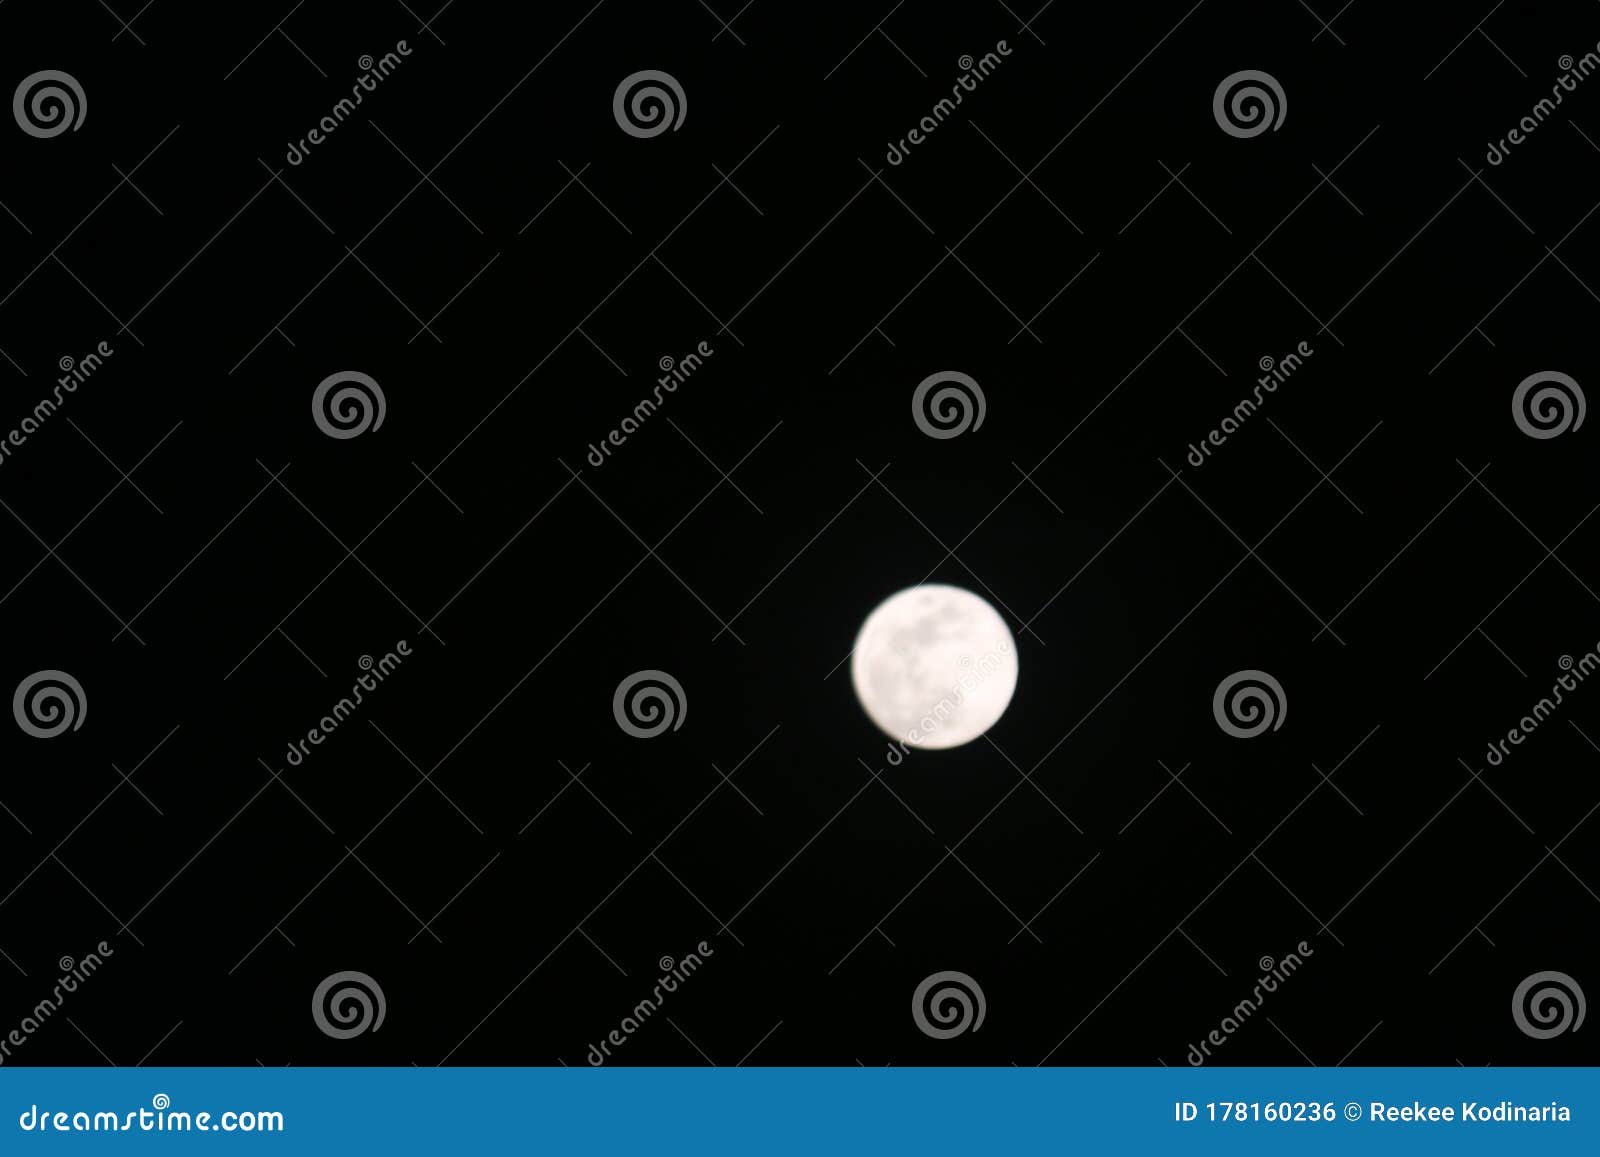 Full Moon In The Sky Stock Photo Stock Photo Image Of Moon Narratives